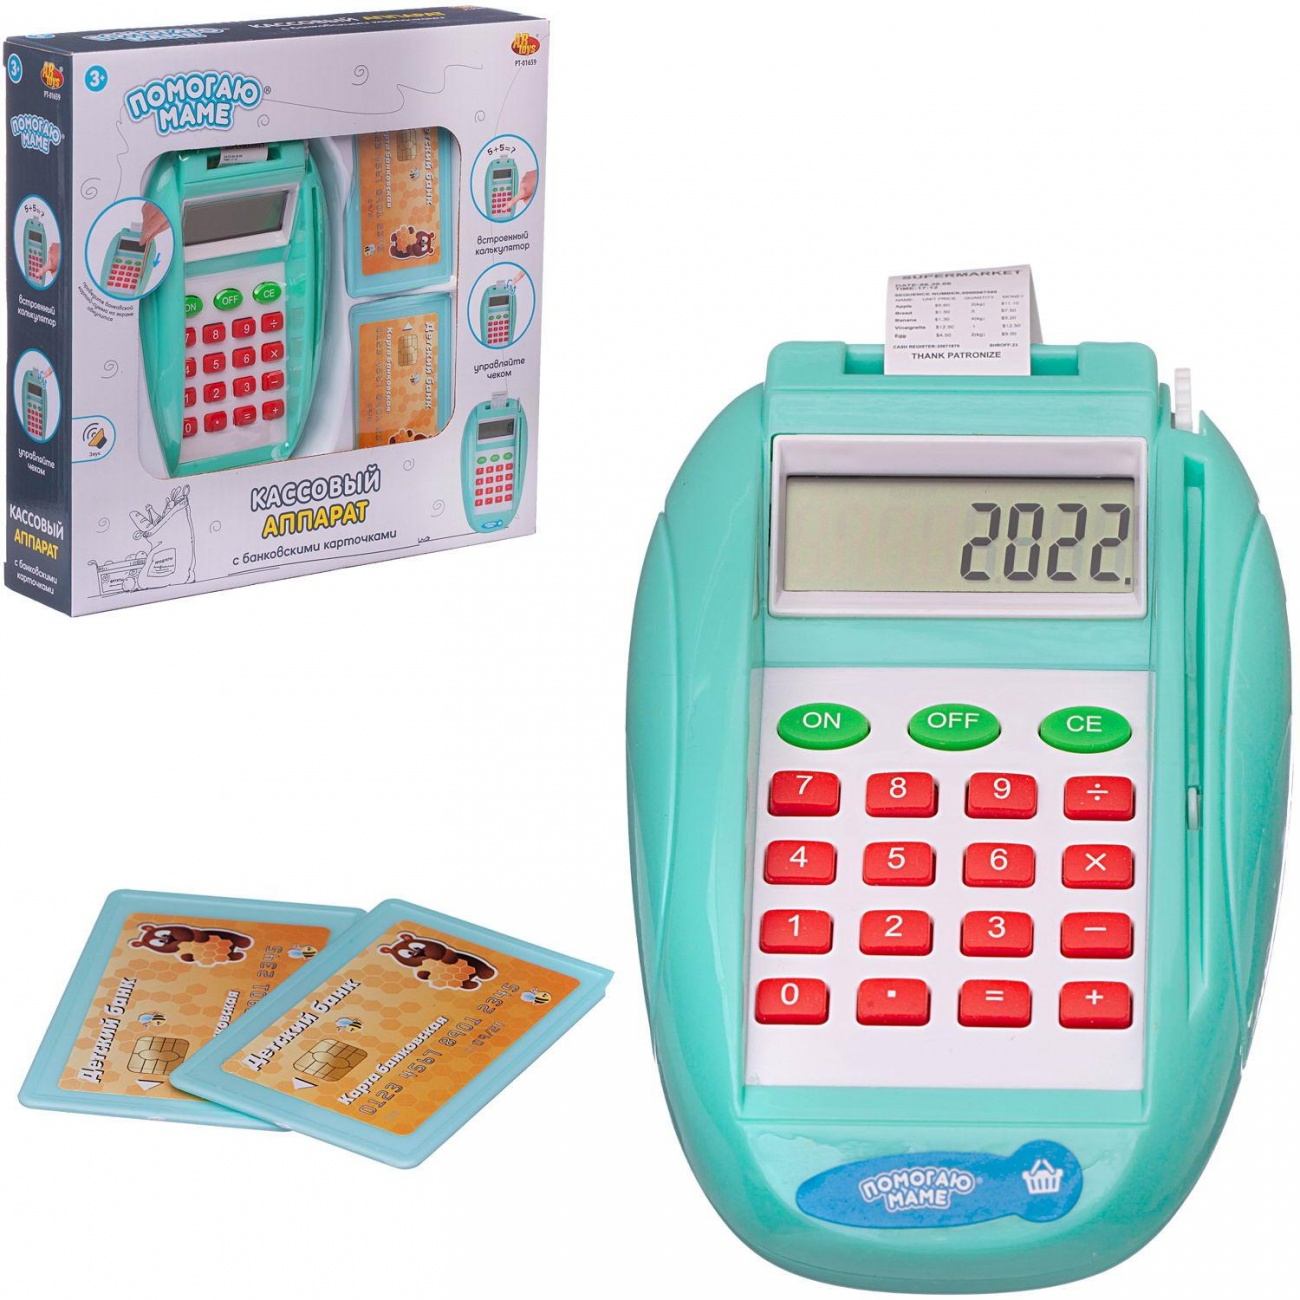 Игровой набор ABtoys Помогаю маме, Кассовый аппарат с банковскими карточками PT-01659